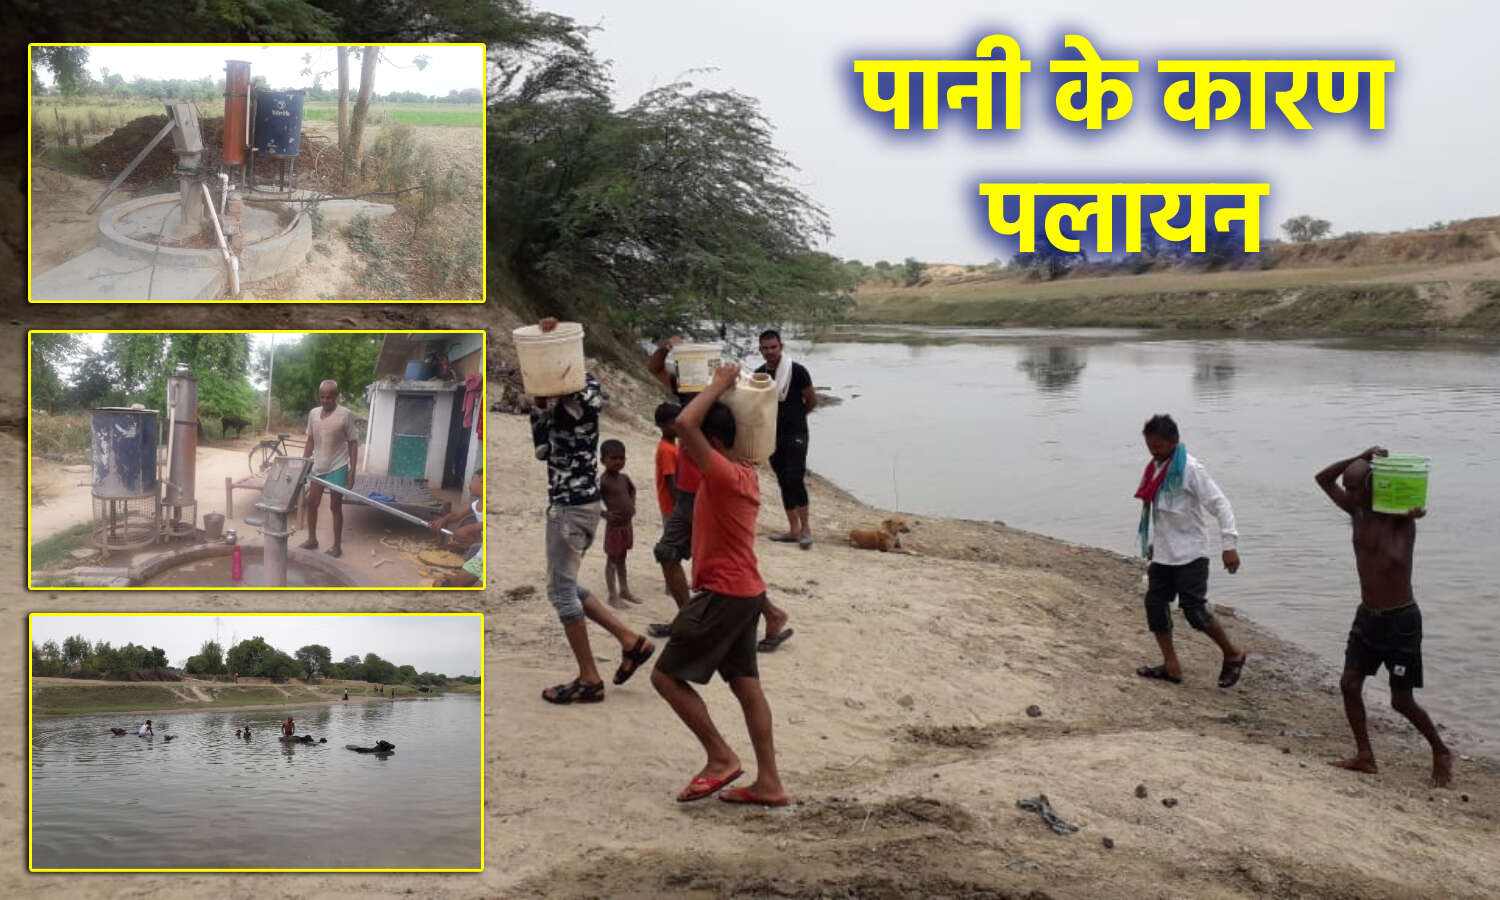 Drinking Water Problem : फतेहपुर में हैंडपंप से साफ पानी नहीं निकलने पर नदी से पानी ढोने को मजबूर लोग, पर वह पानी भी गंदा ही है।